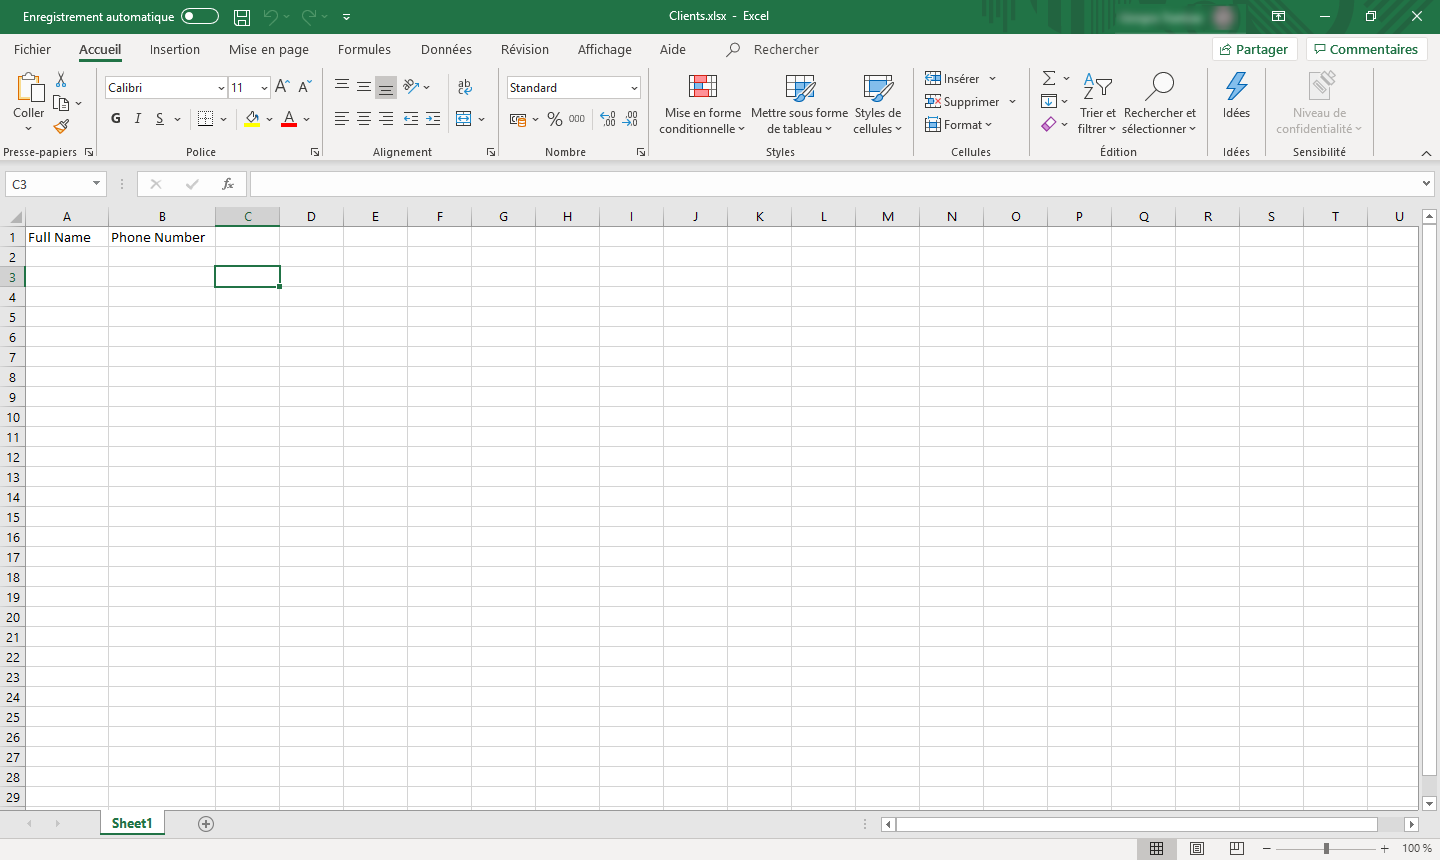 Capture d’écran de la structure du fichier Excel.